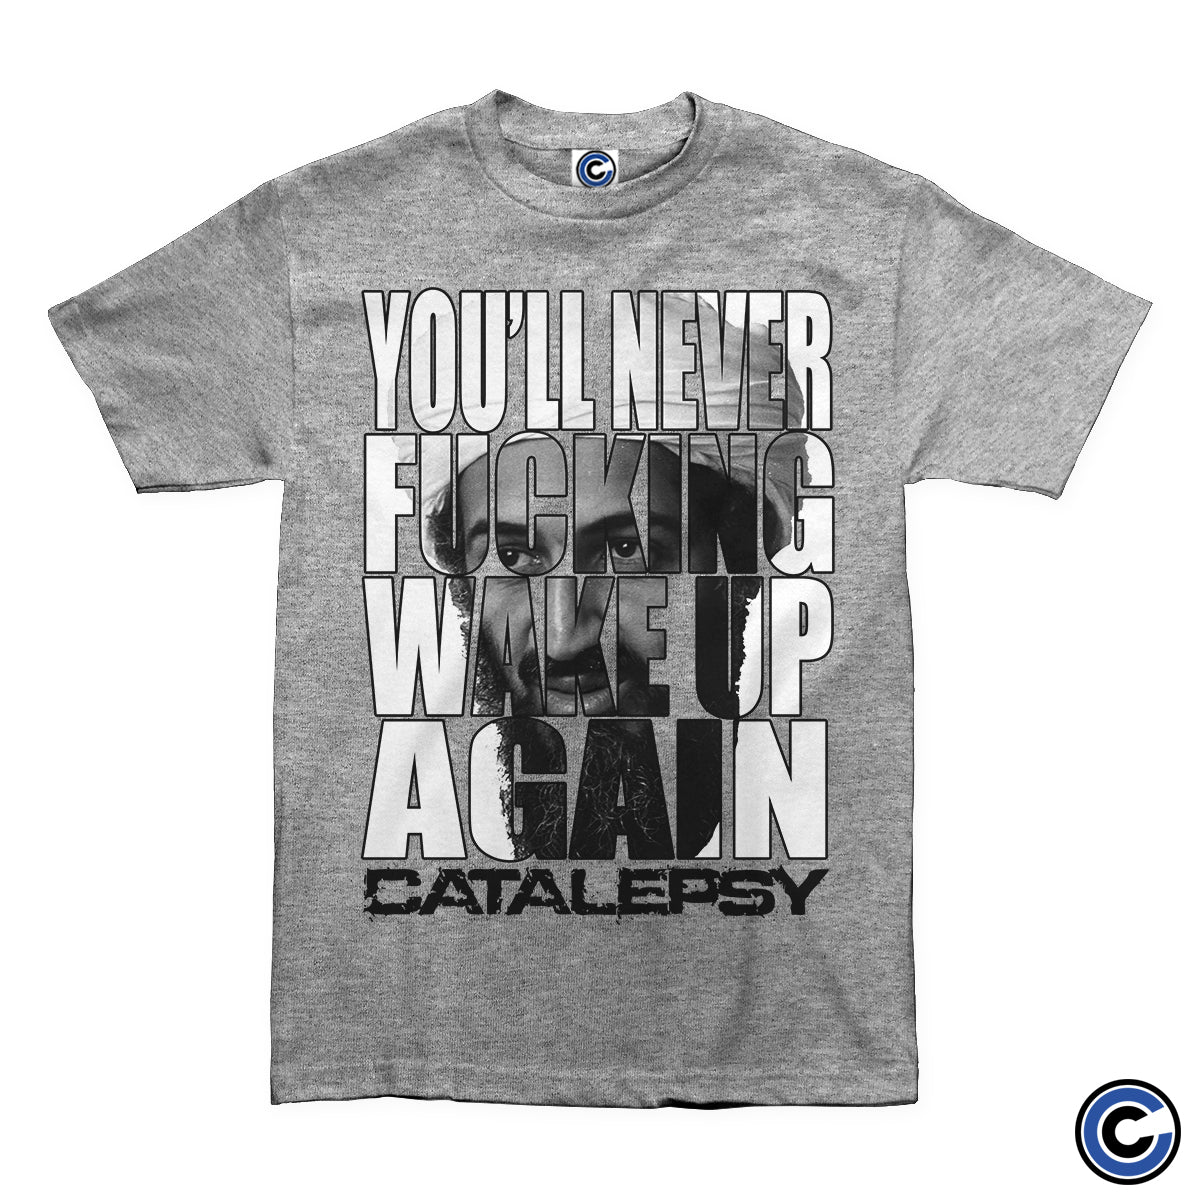 Catalepsy "Osama" Shirt